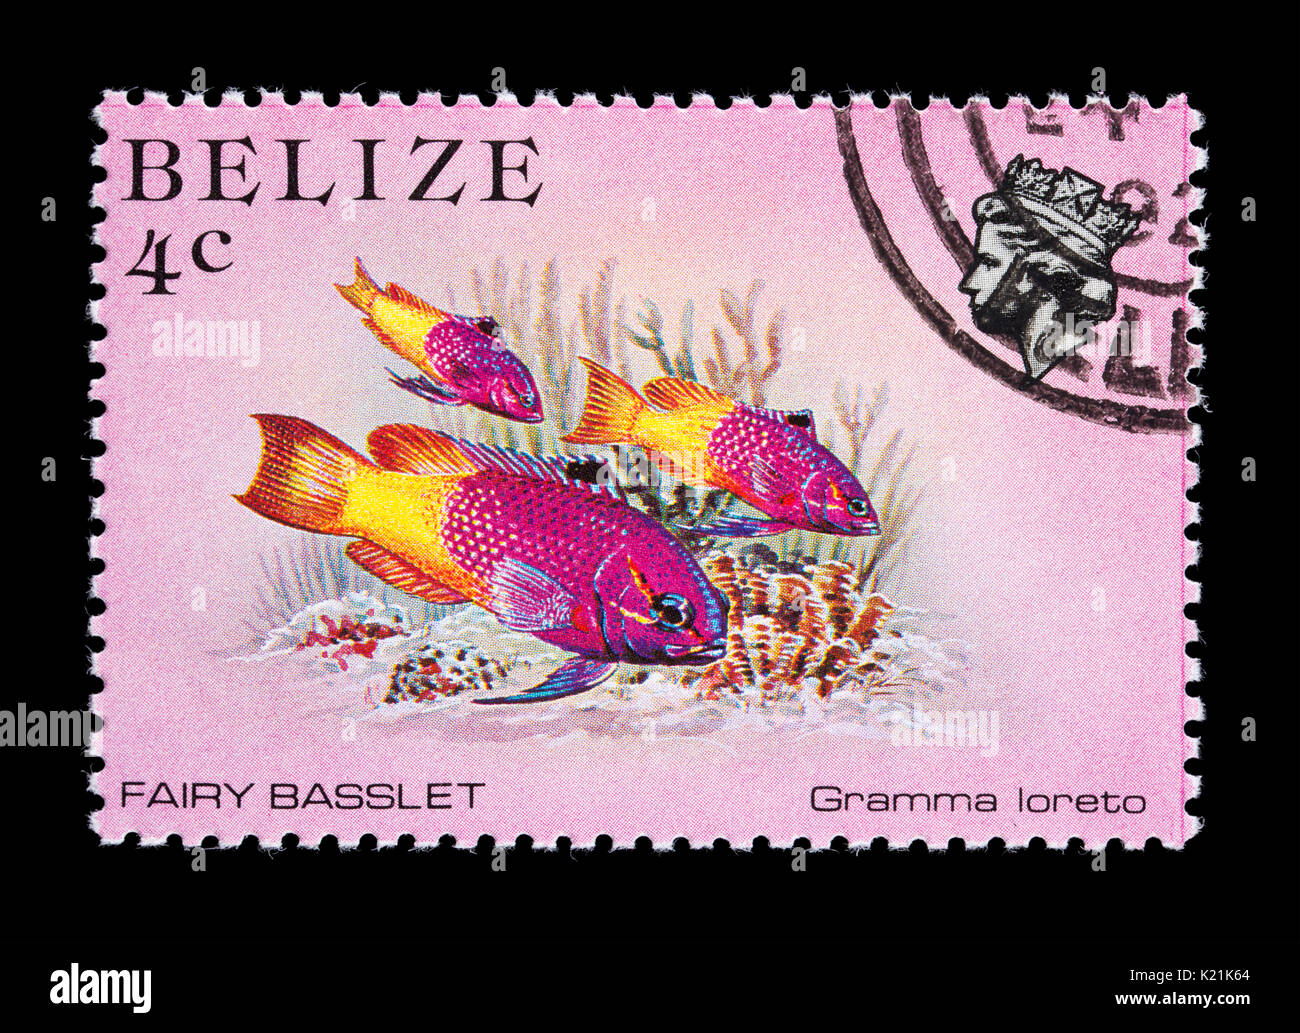 Francobollo dal Belize raffigurante una fata basslet (Gramma loreto) Foto Stock